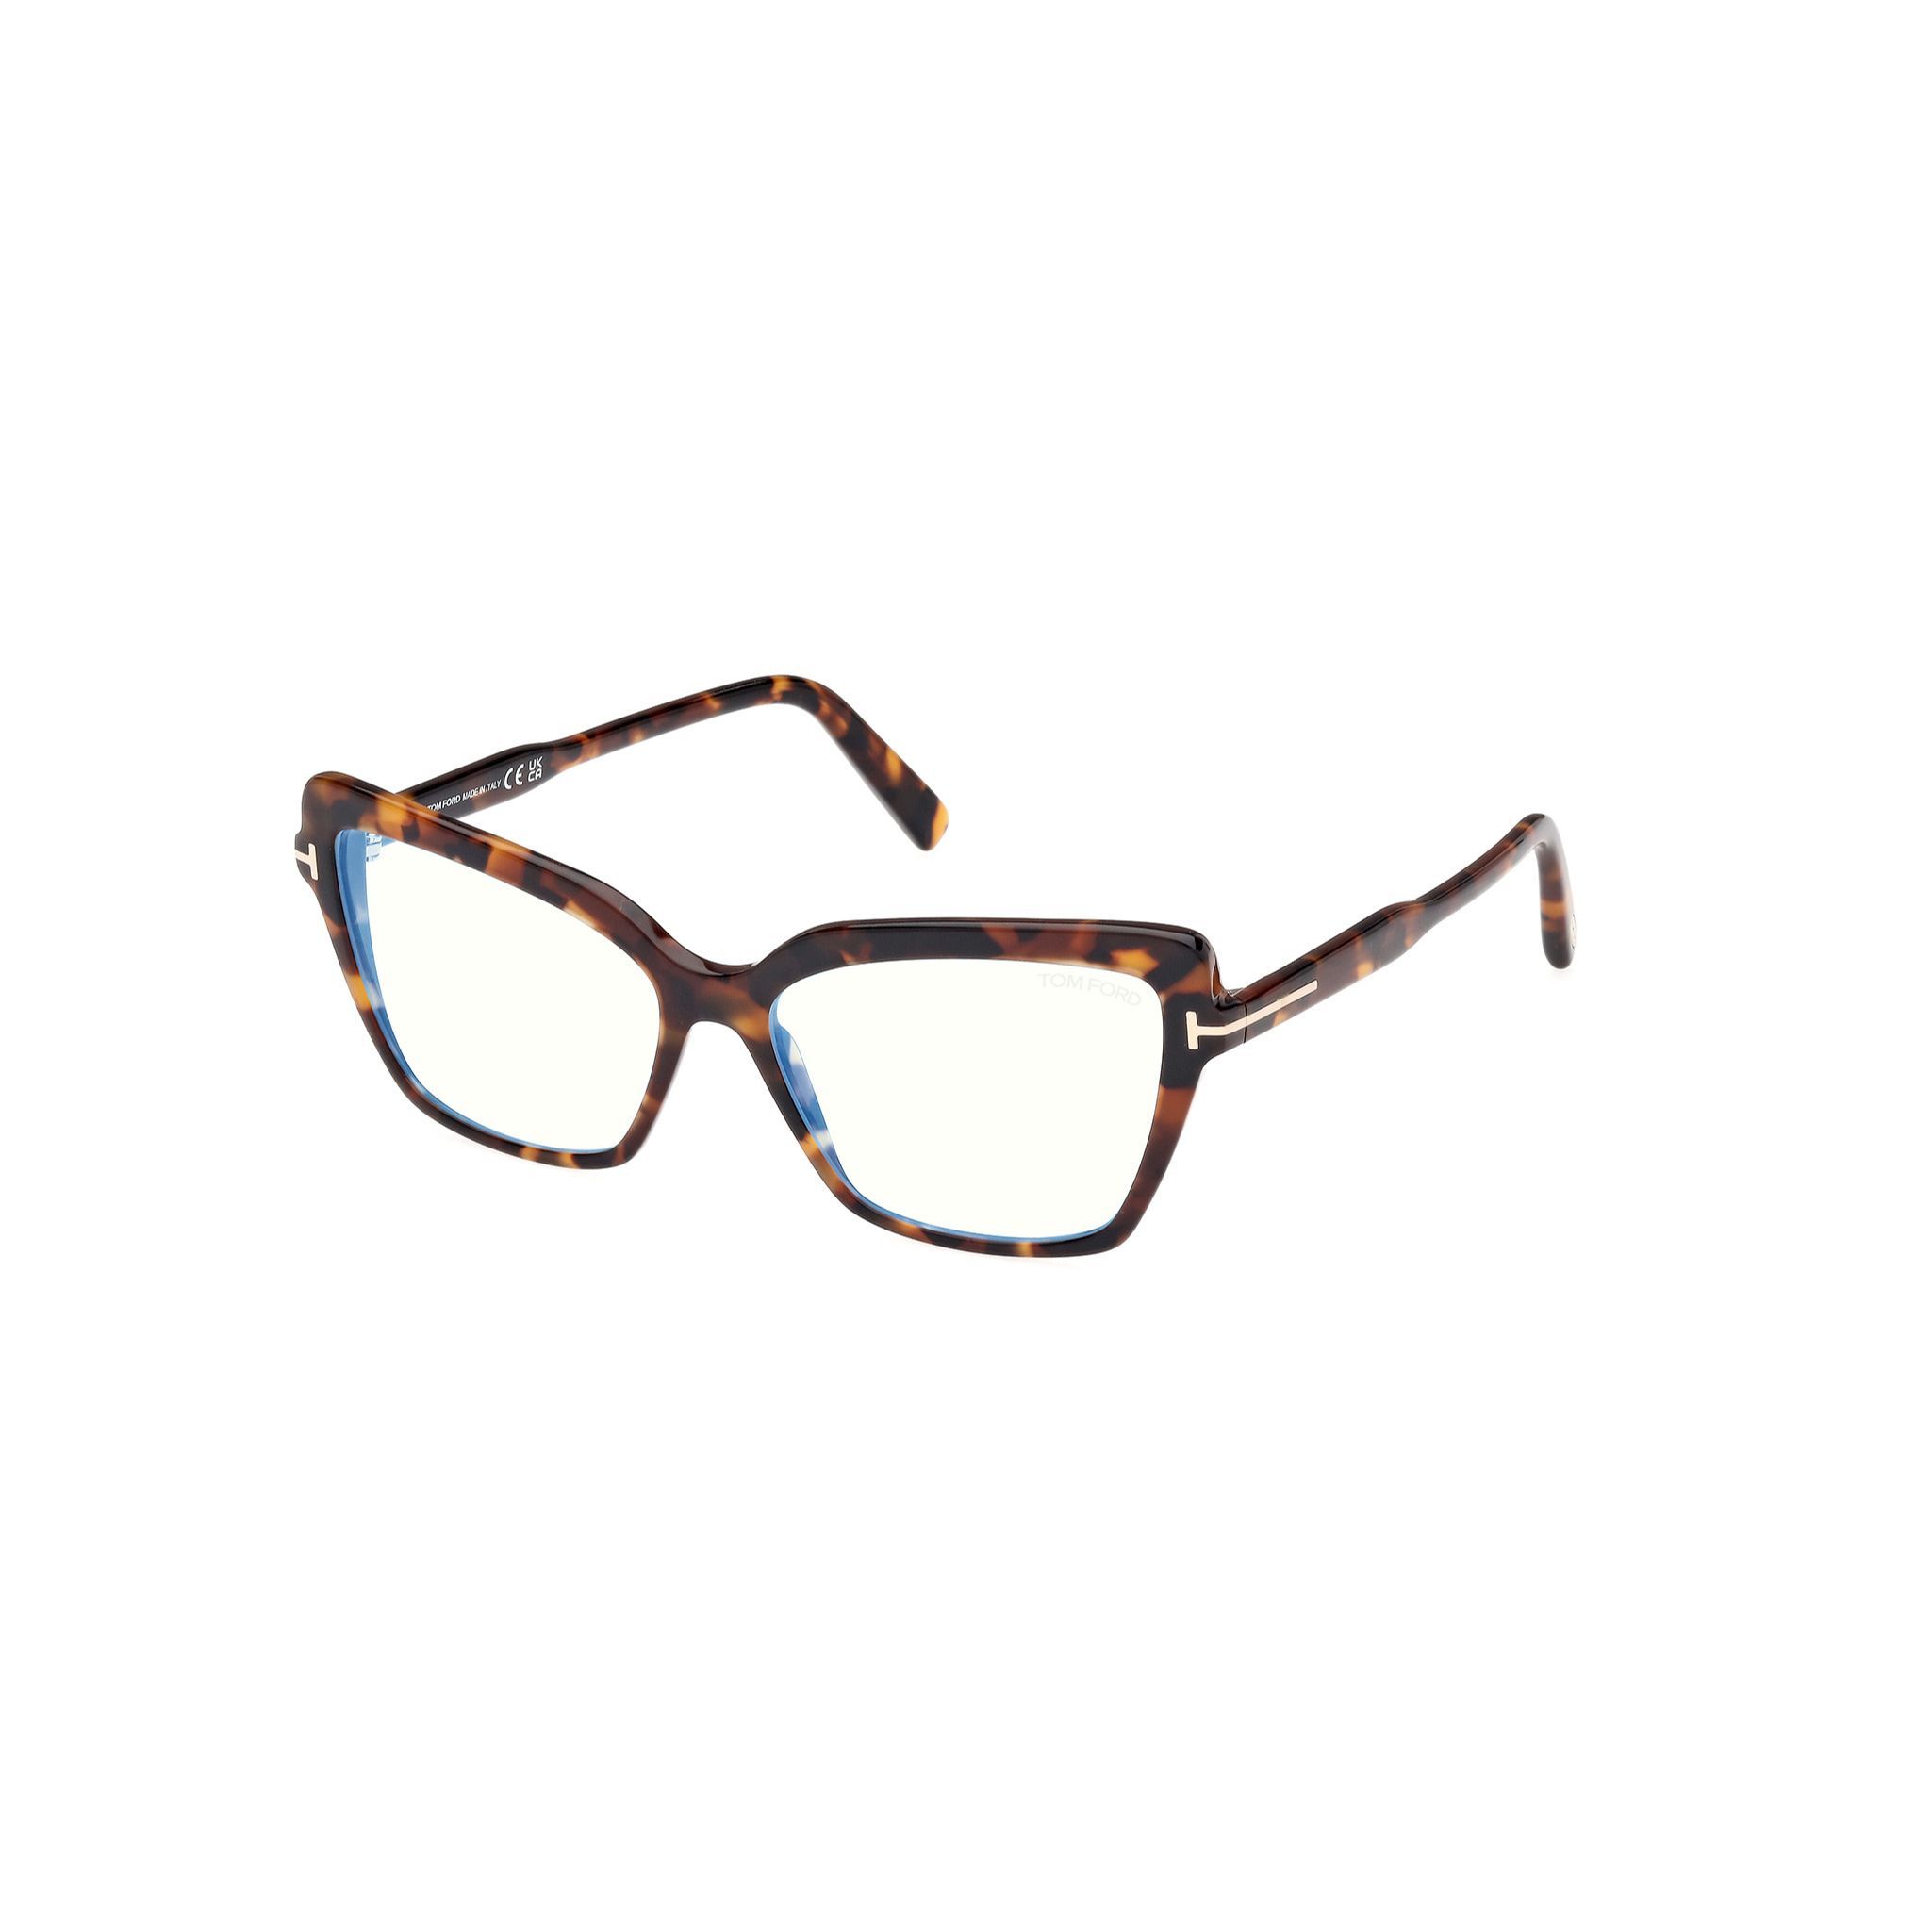 FT5948 Cateye Eyeglasses 052 - size 55